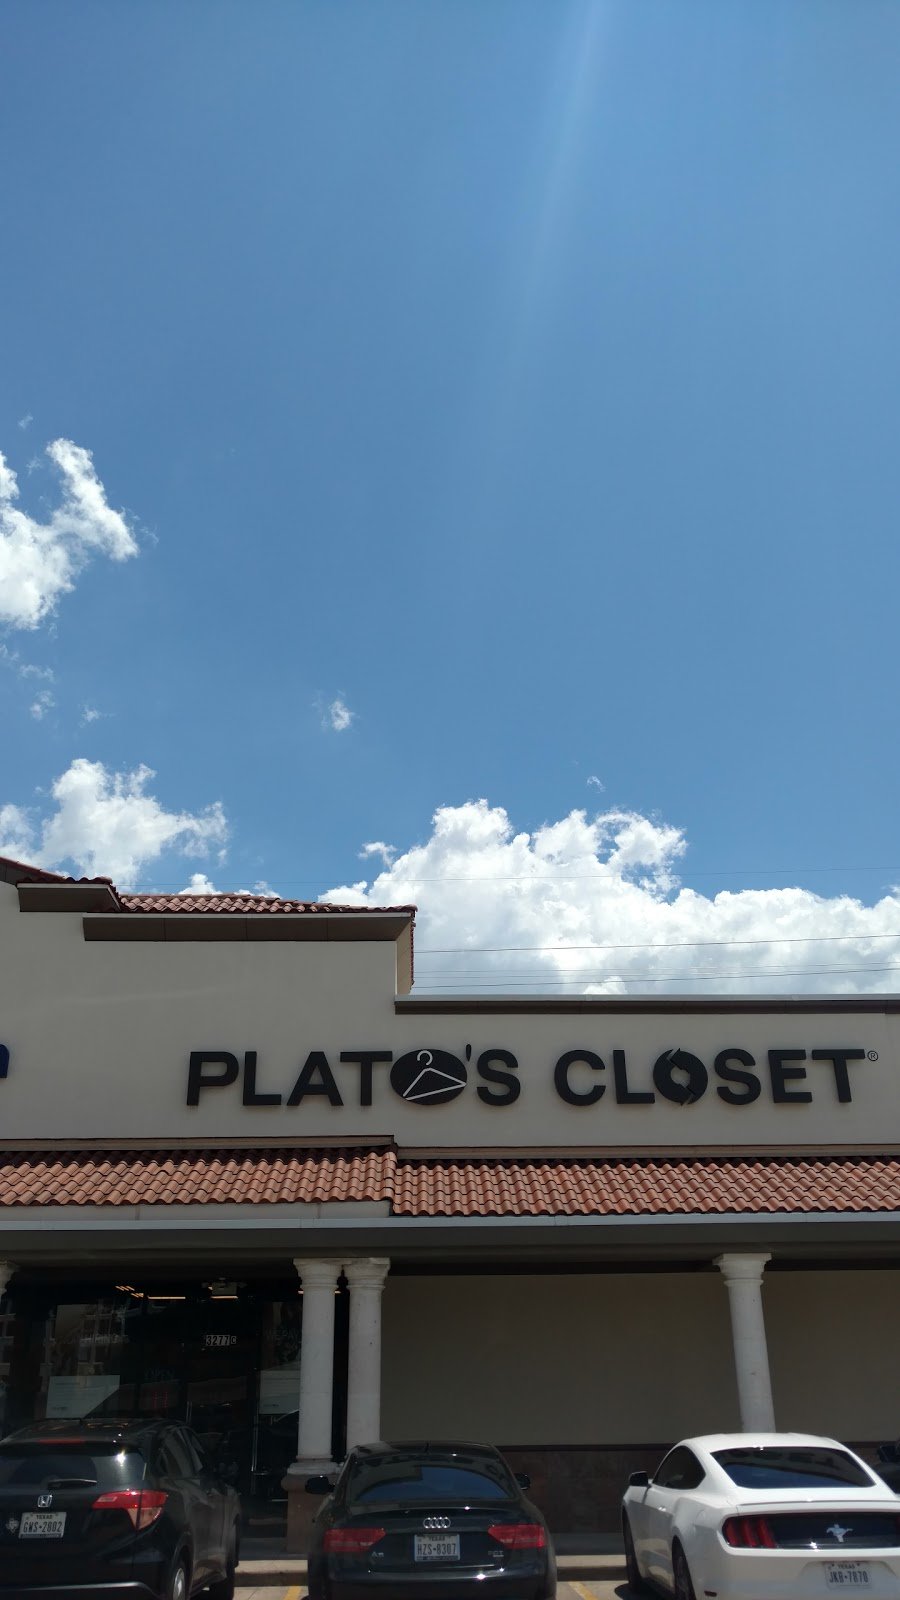 Plato’s Closet Greenway